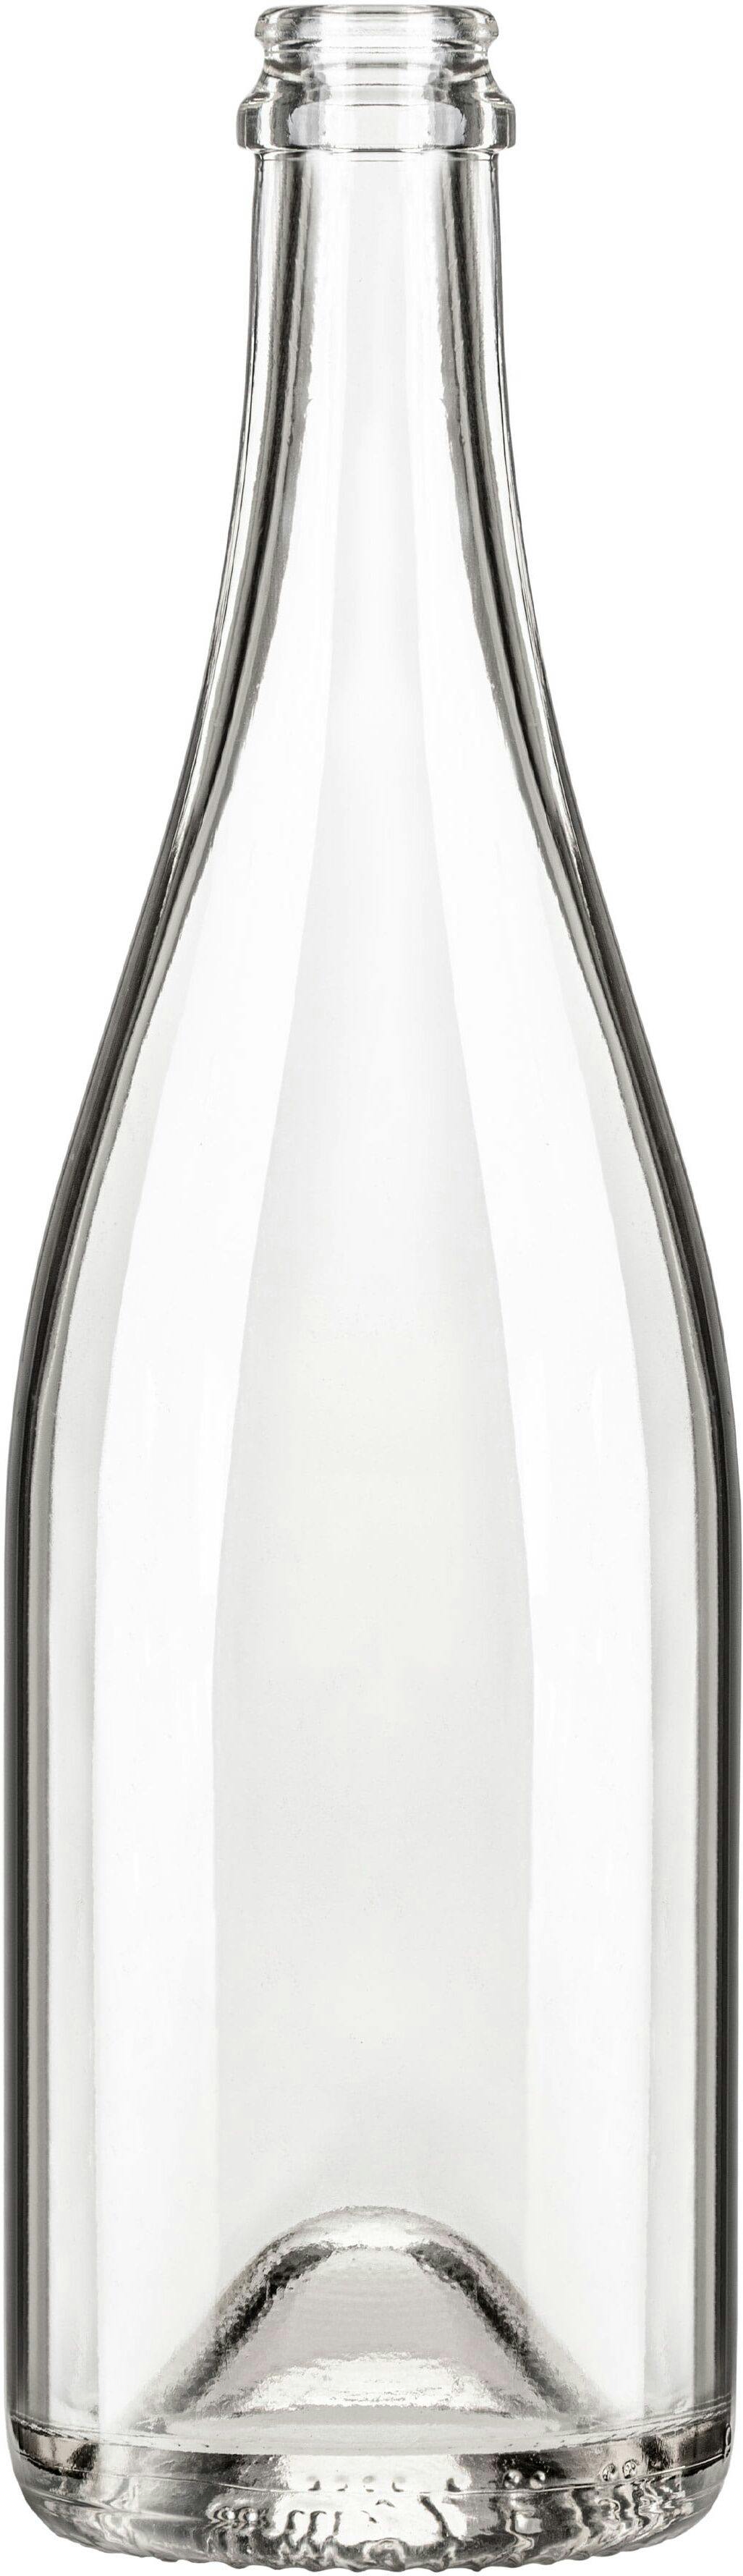 Flasche SPUM STD 750 ml BG-Korken